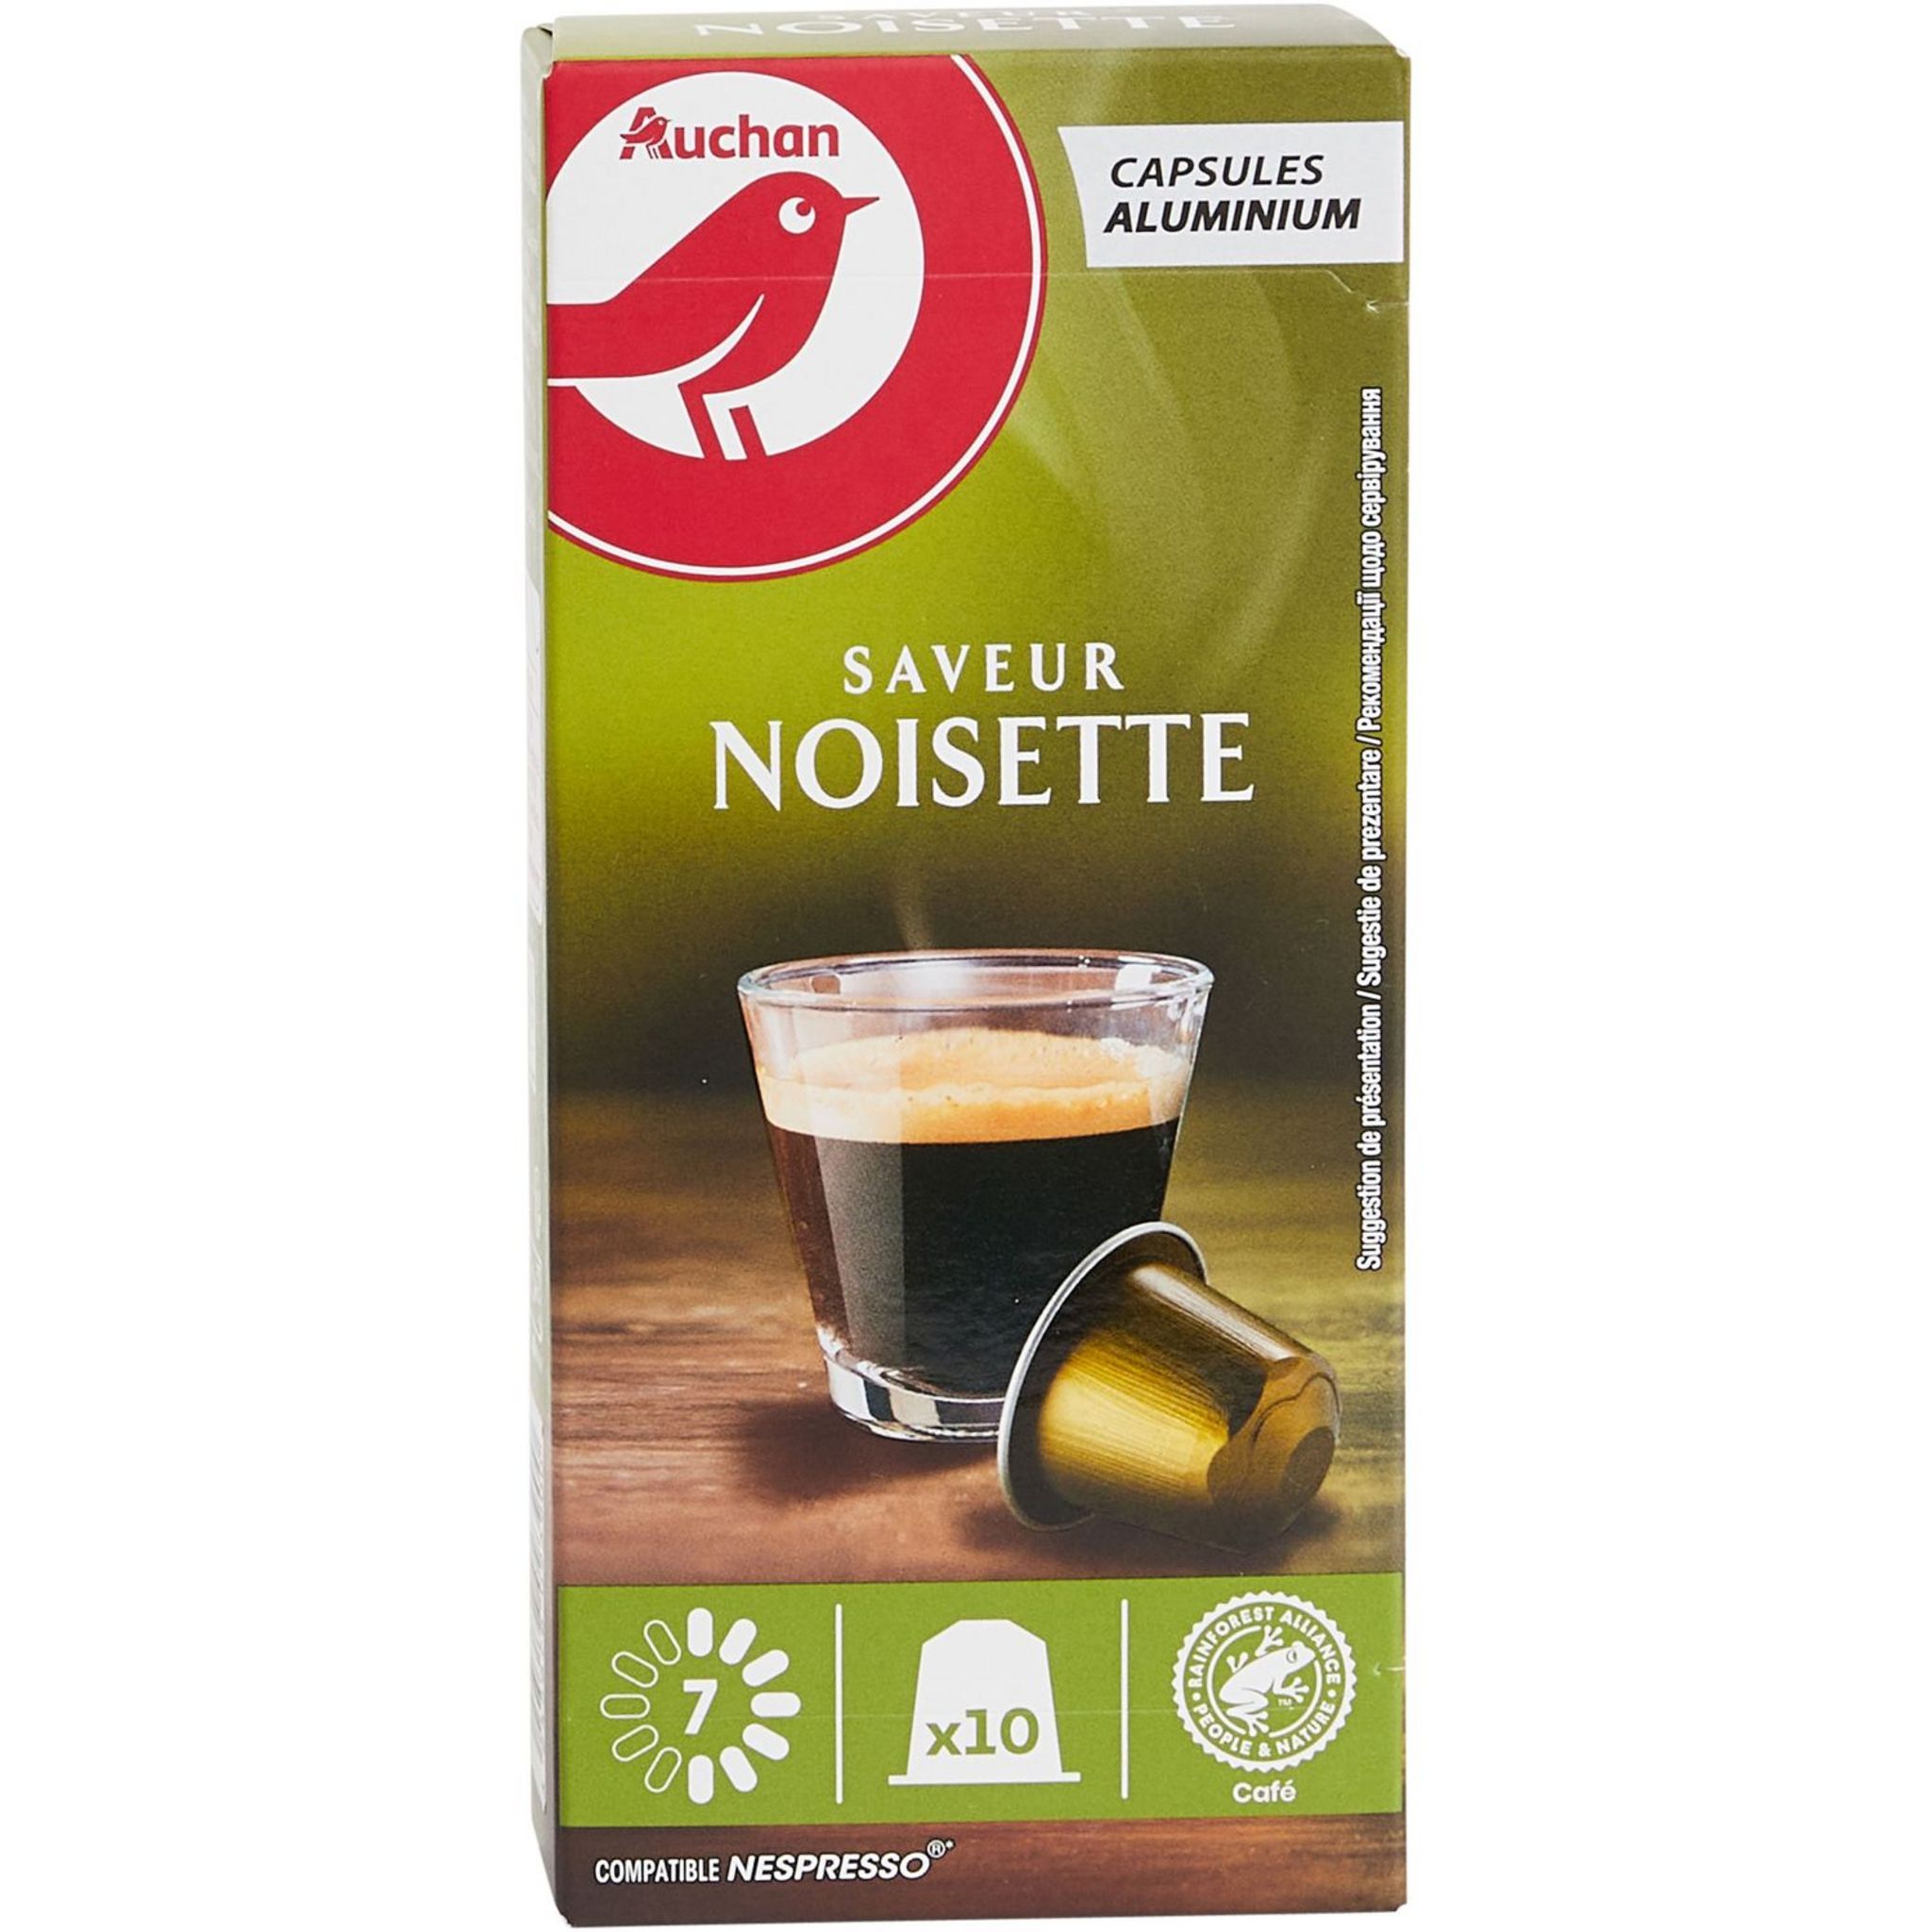 Café NOISETTE